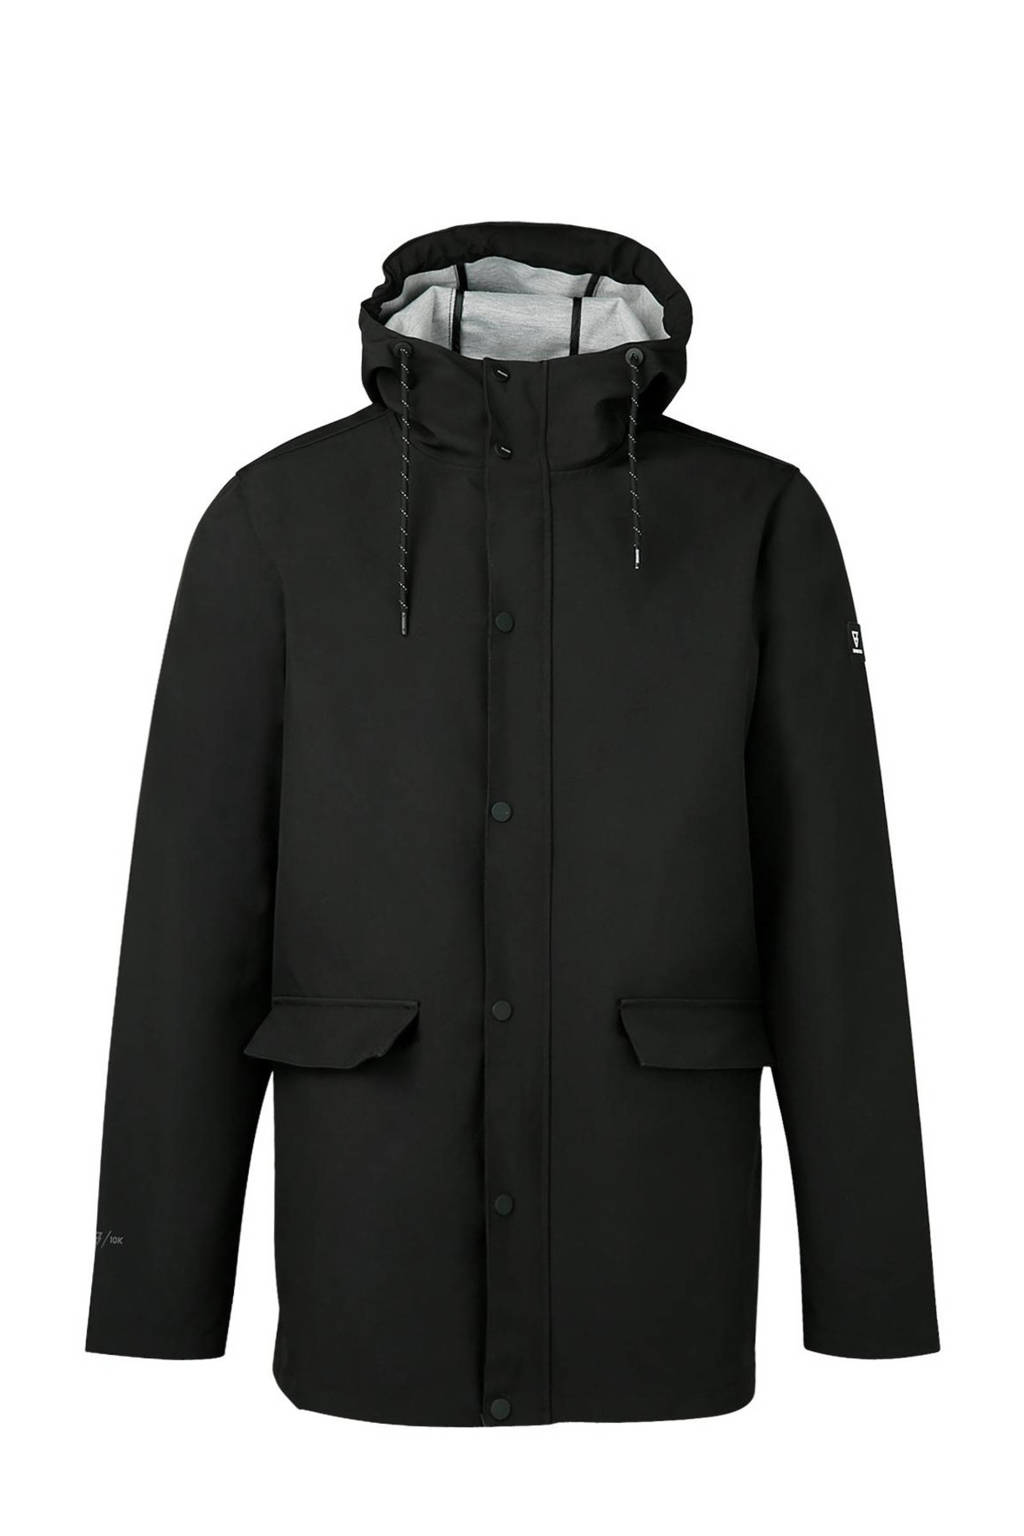 Brunotti outdoor jas zwart, Zwart